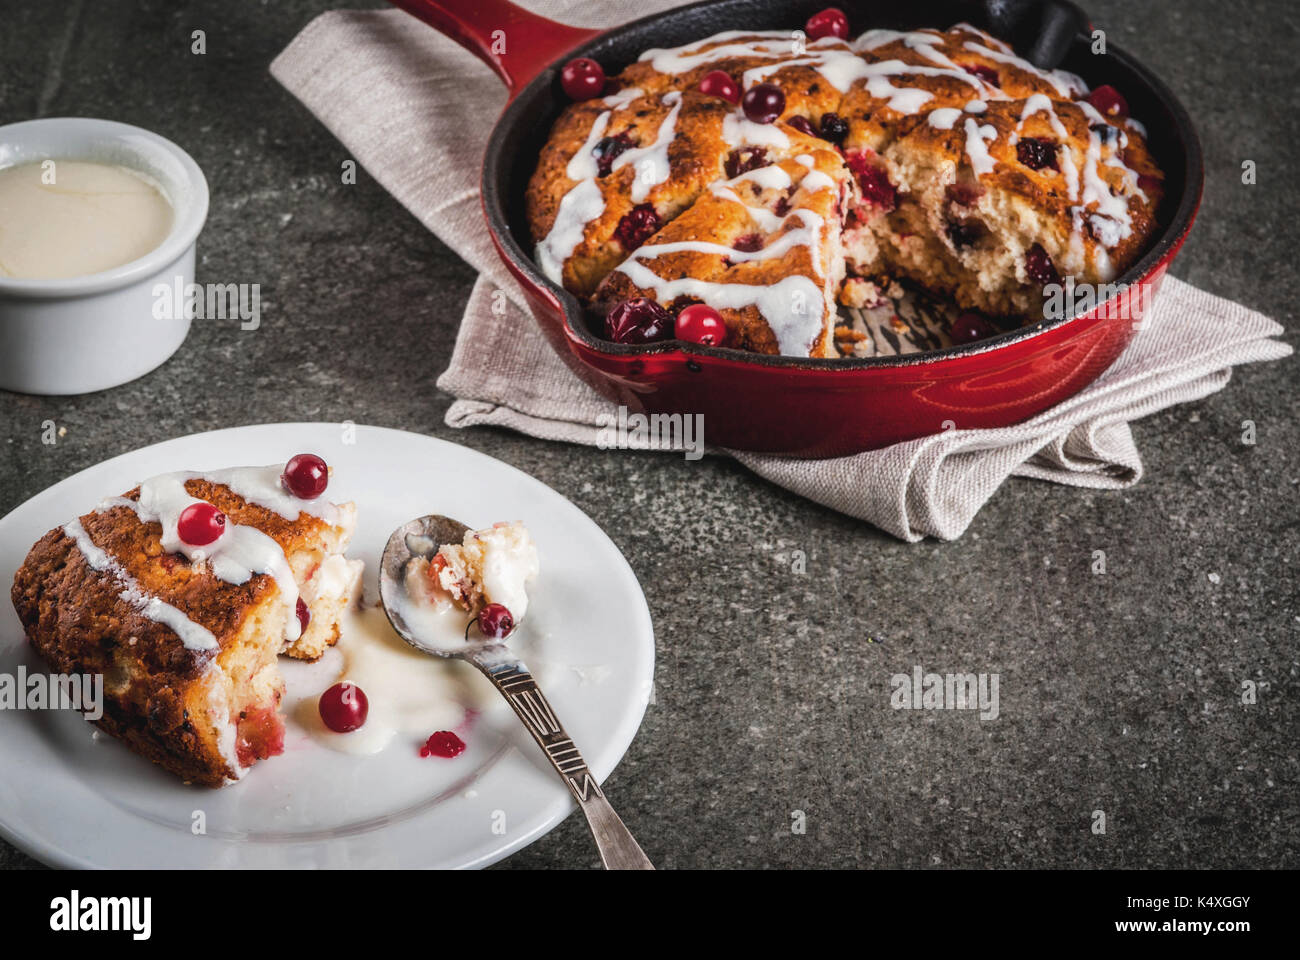 Britisches Englisch traditionelles Gebäck. Cookies Torte cranberry Scones  mit Orangenschalen, mit süßen weißen Glasur, in eine Pfanne geben und auf  einem Teller. Schwarz sto Stockfotografie - Alamy